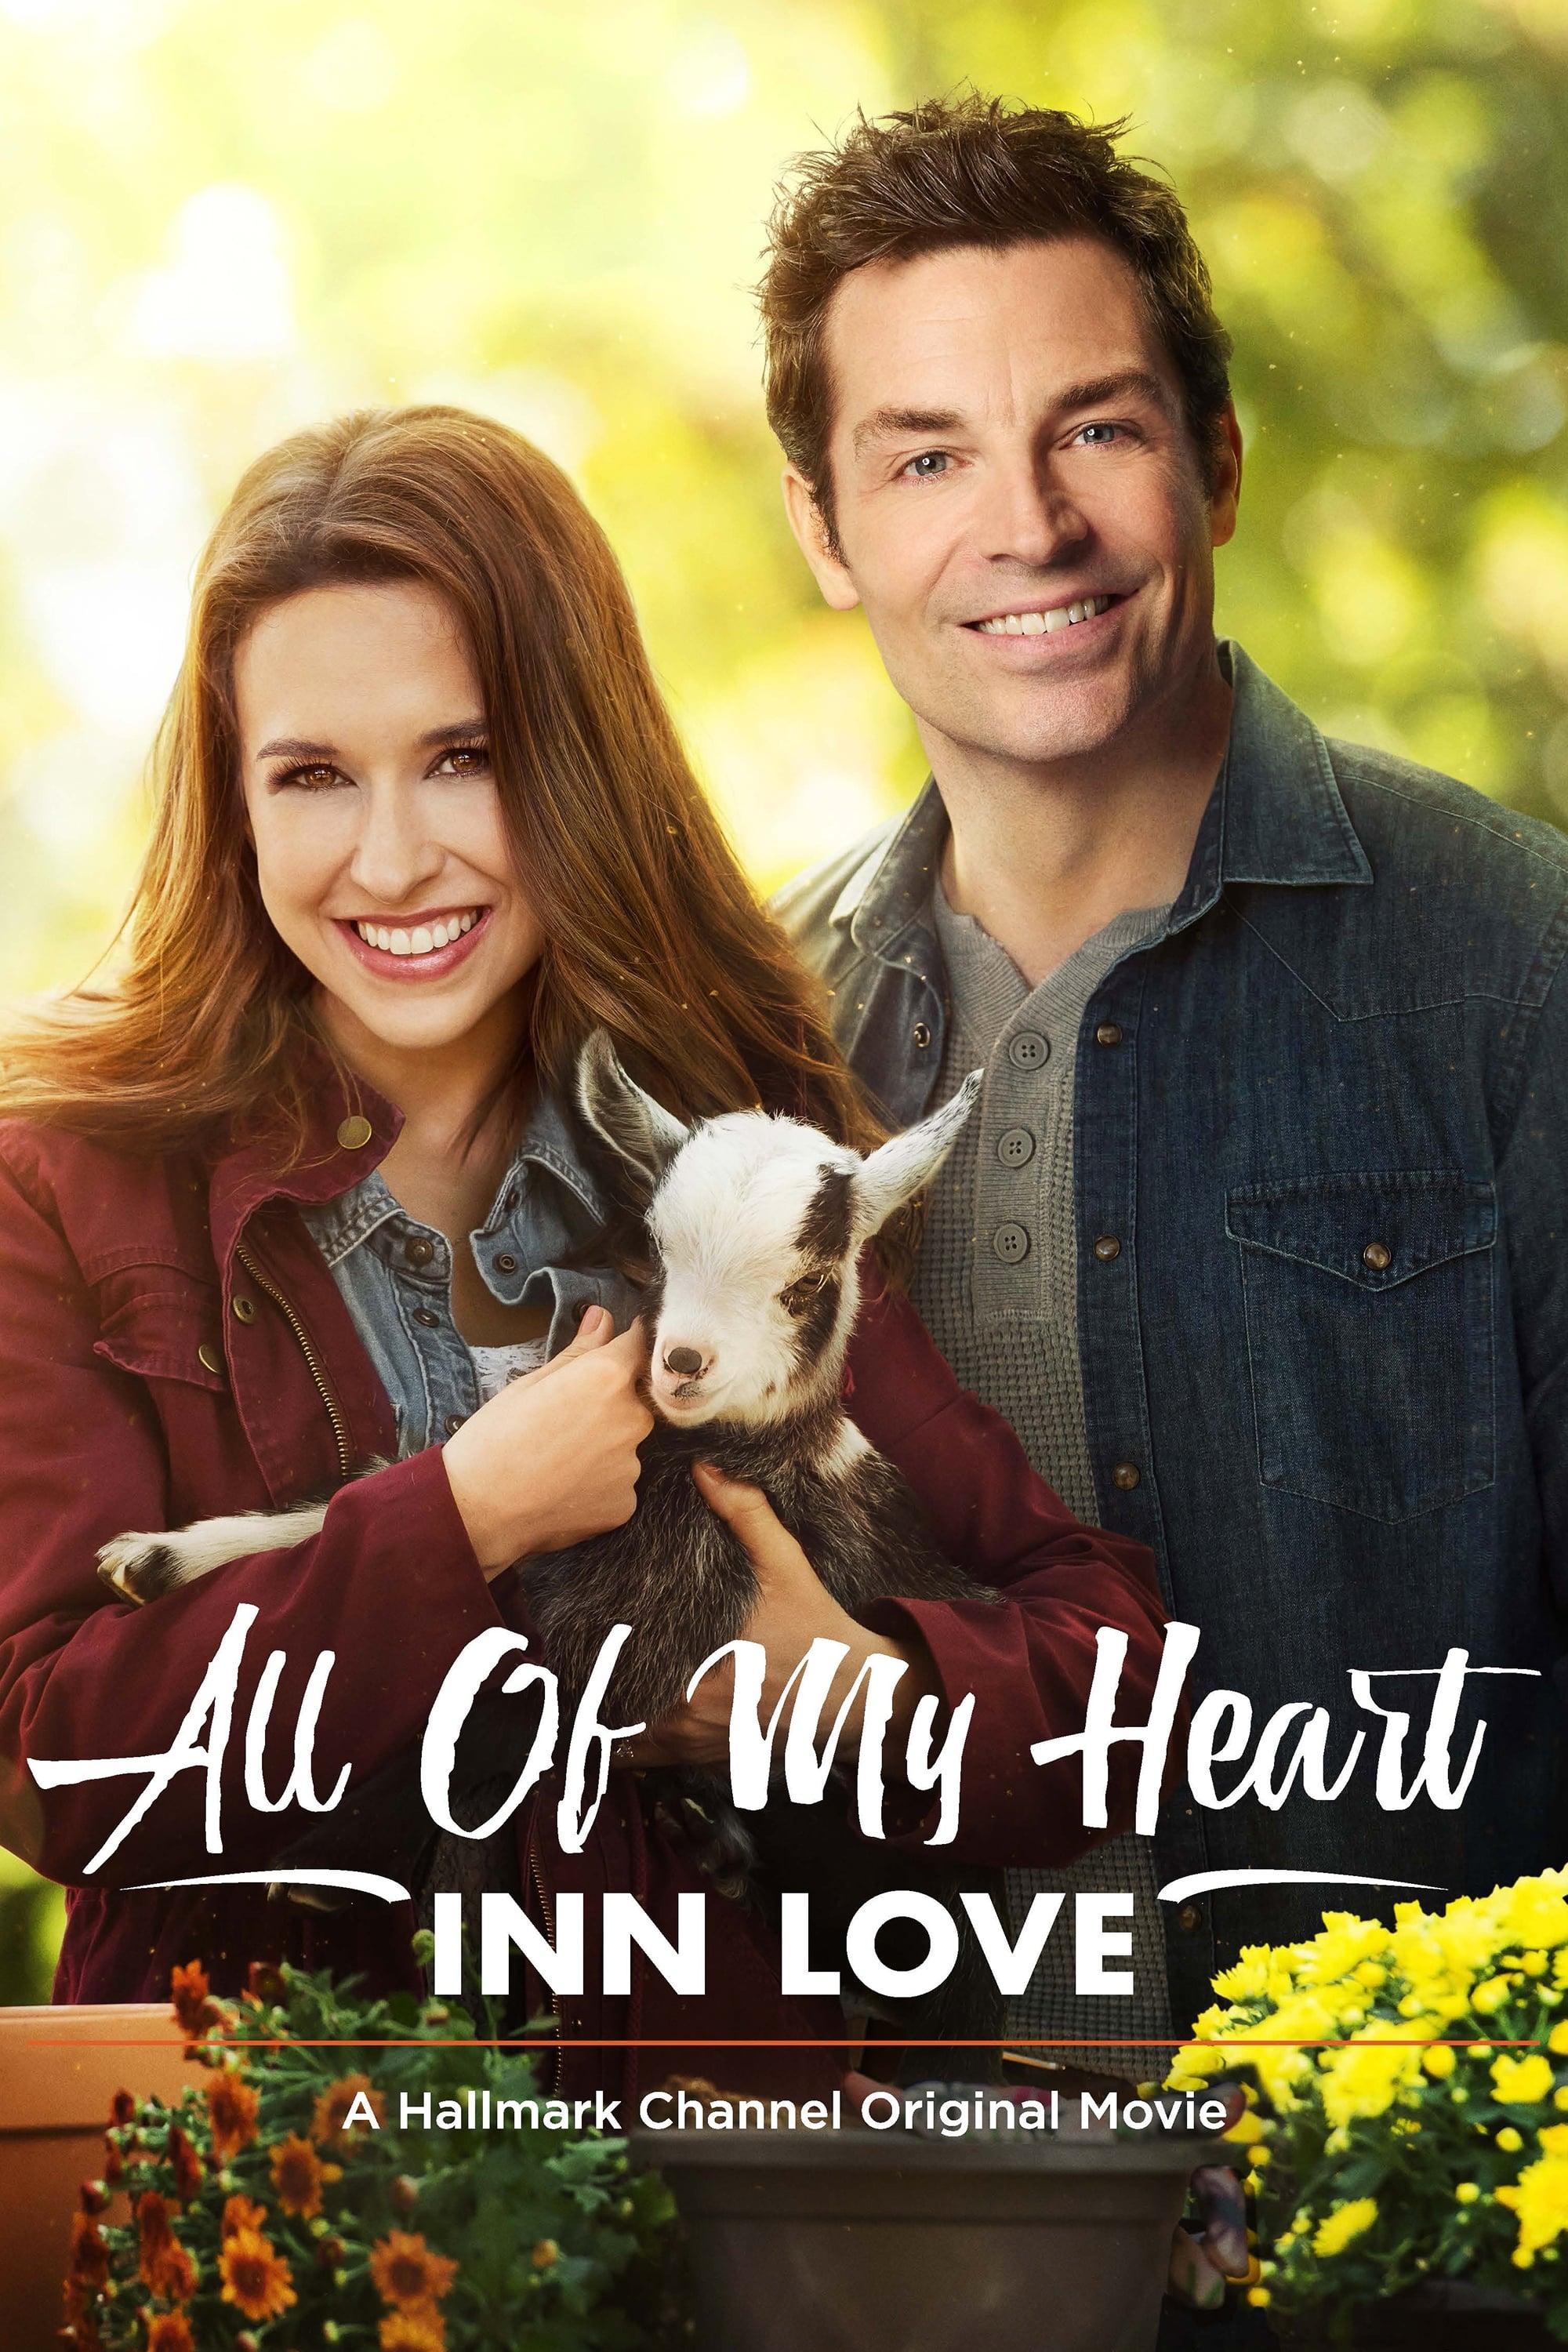 All of My Heart: Inn Love poster